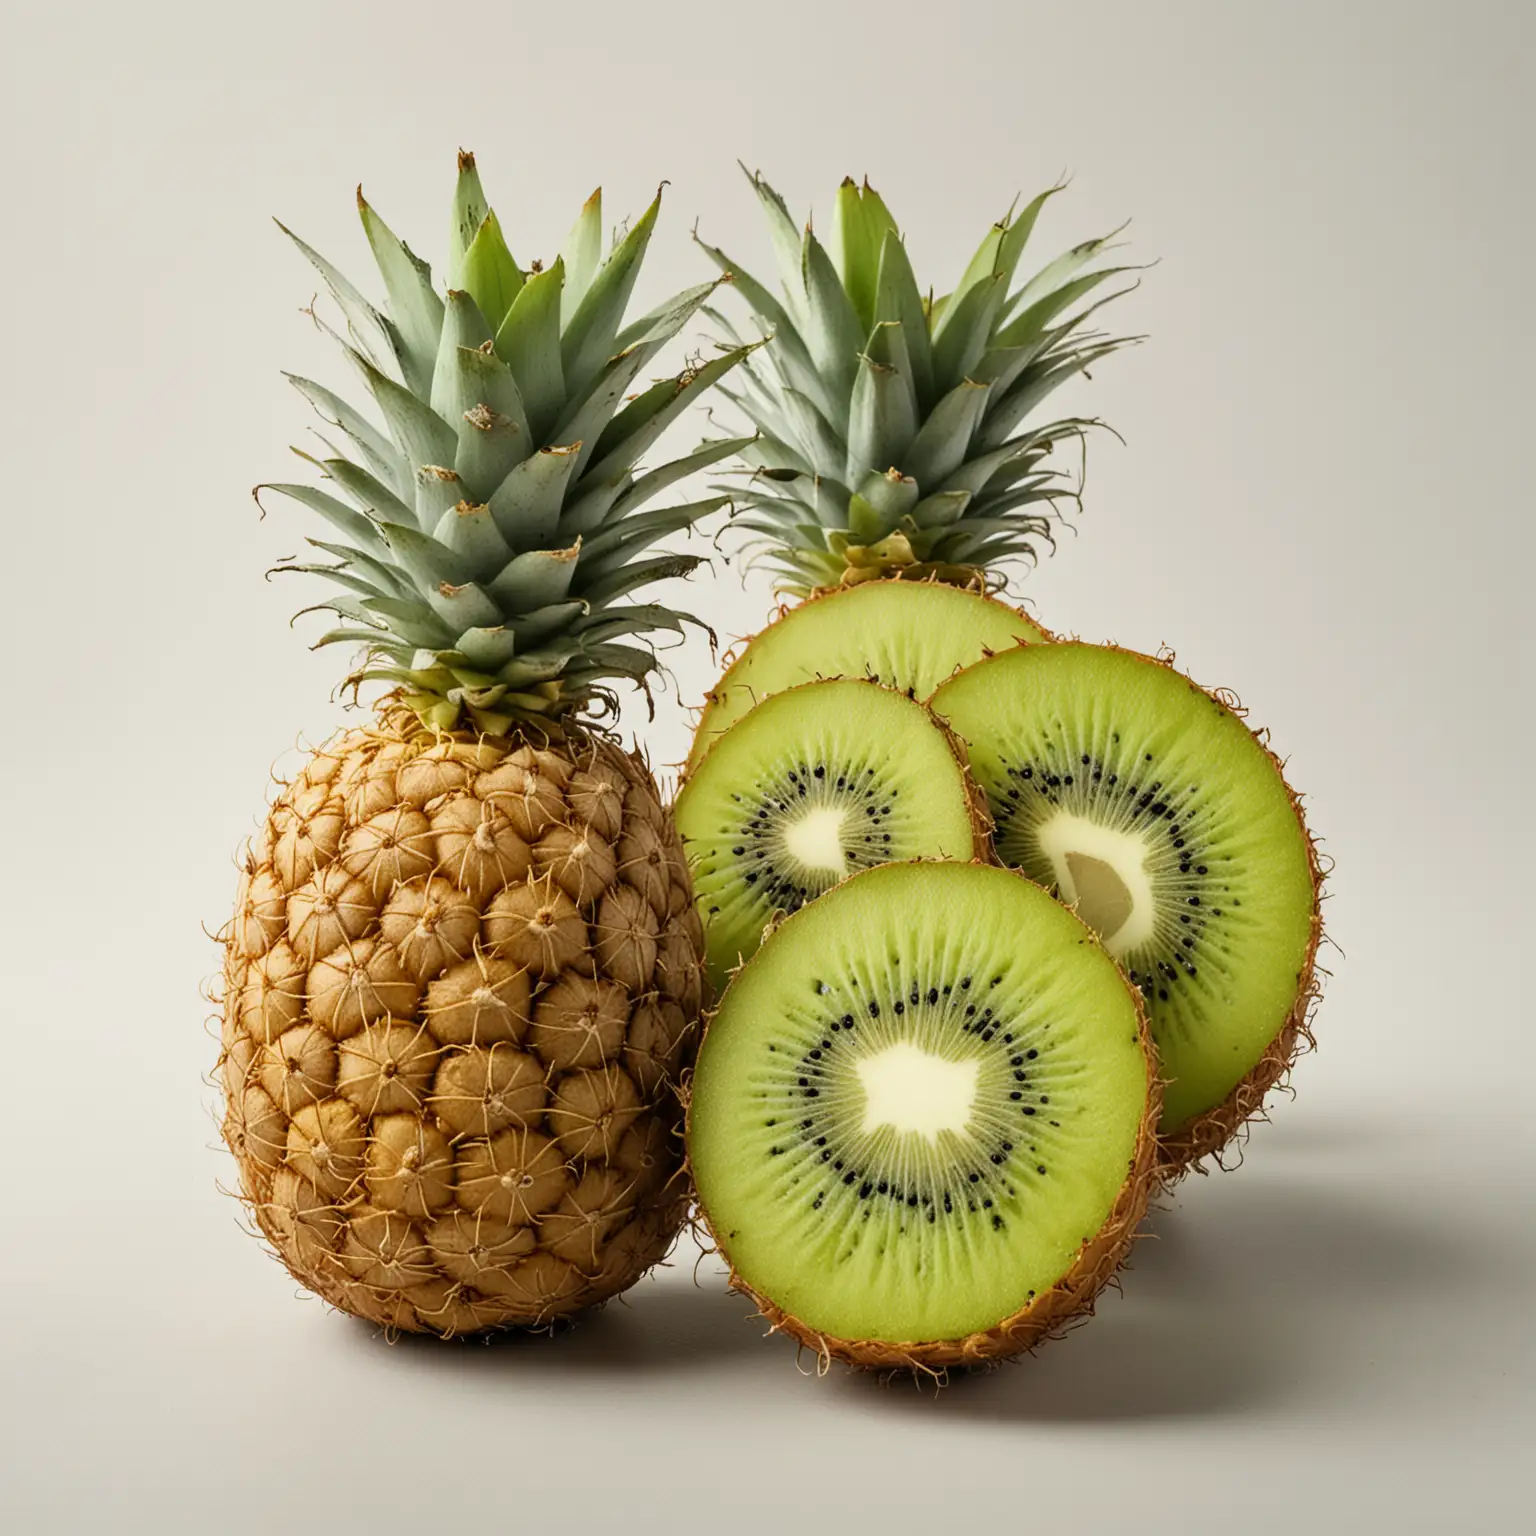 Fresh-Ananas-and-Kiwi-Halves-on-Clean-White-Background